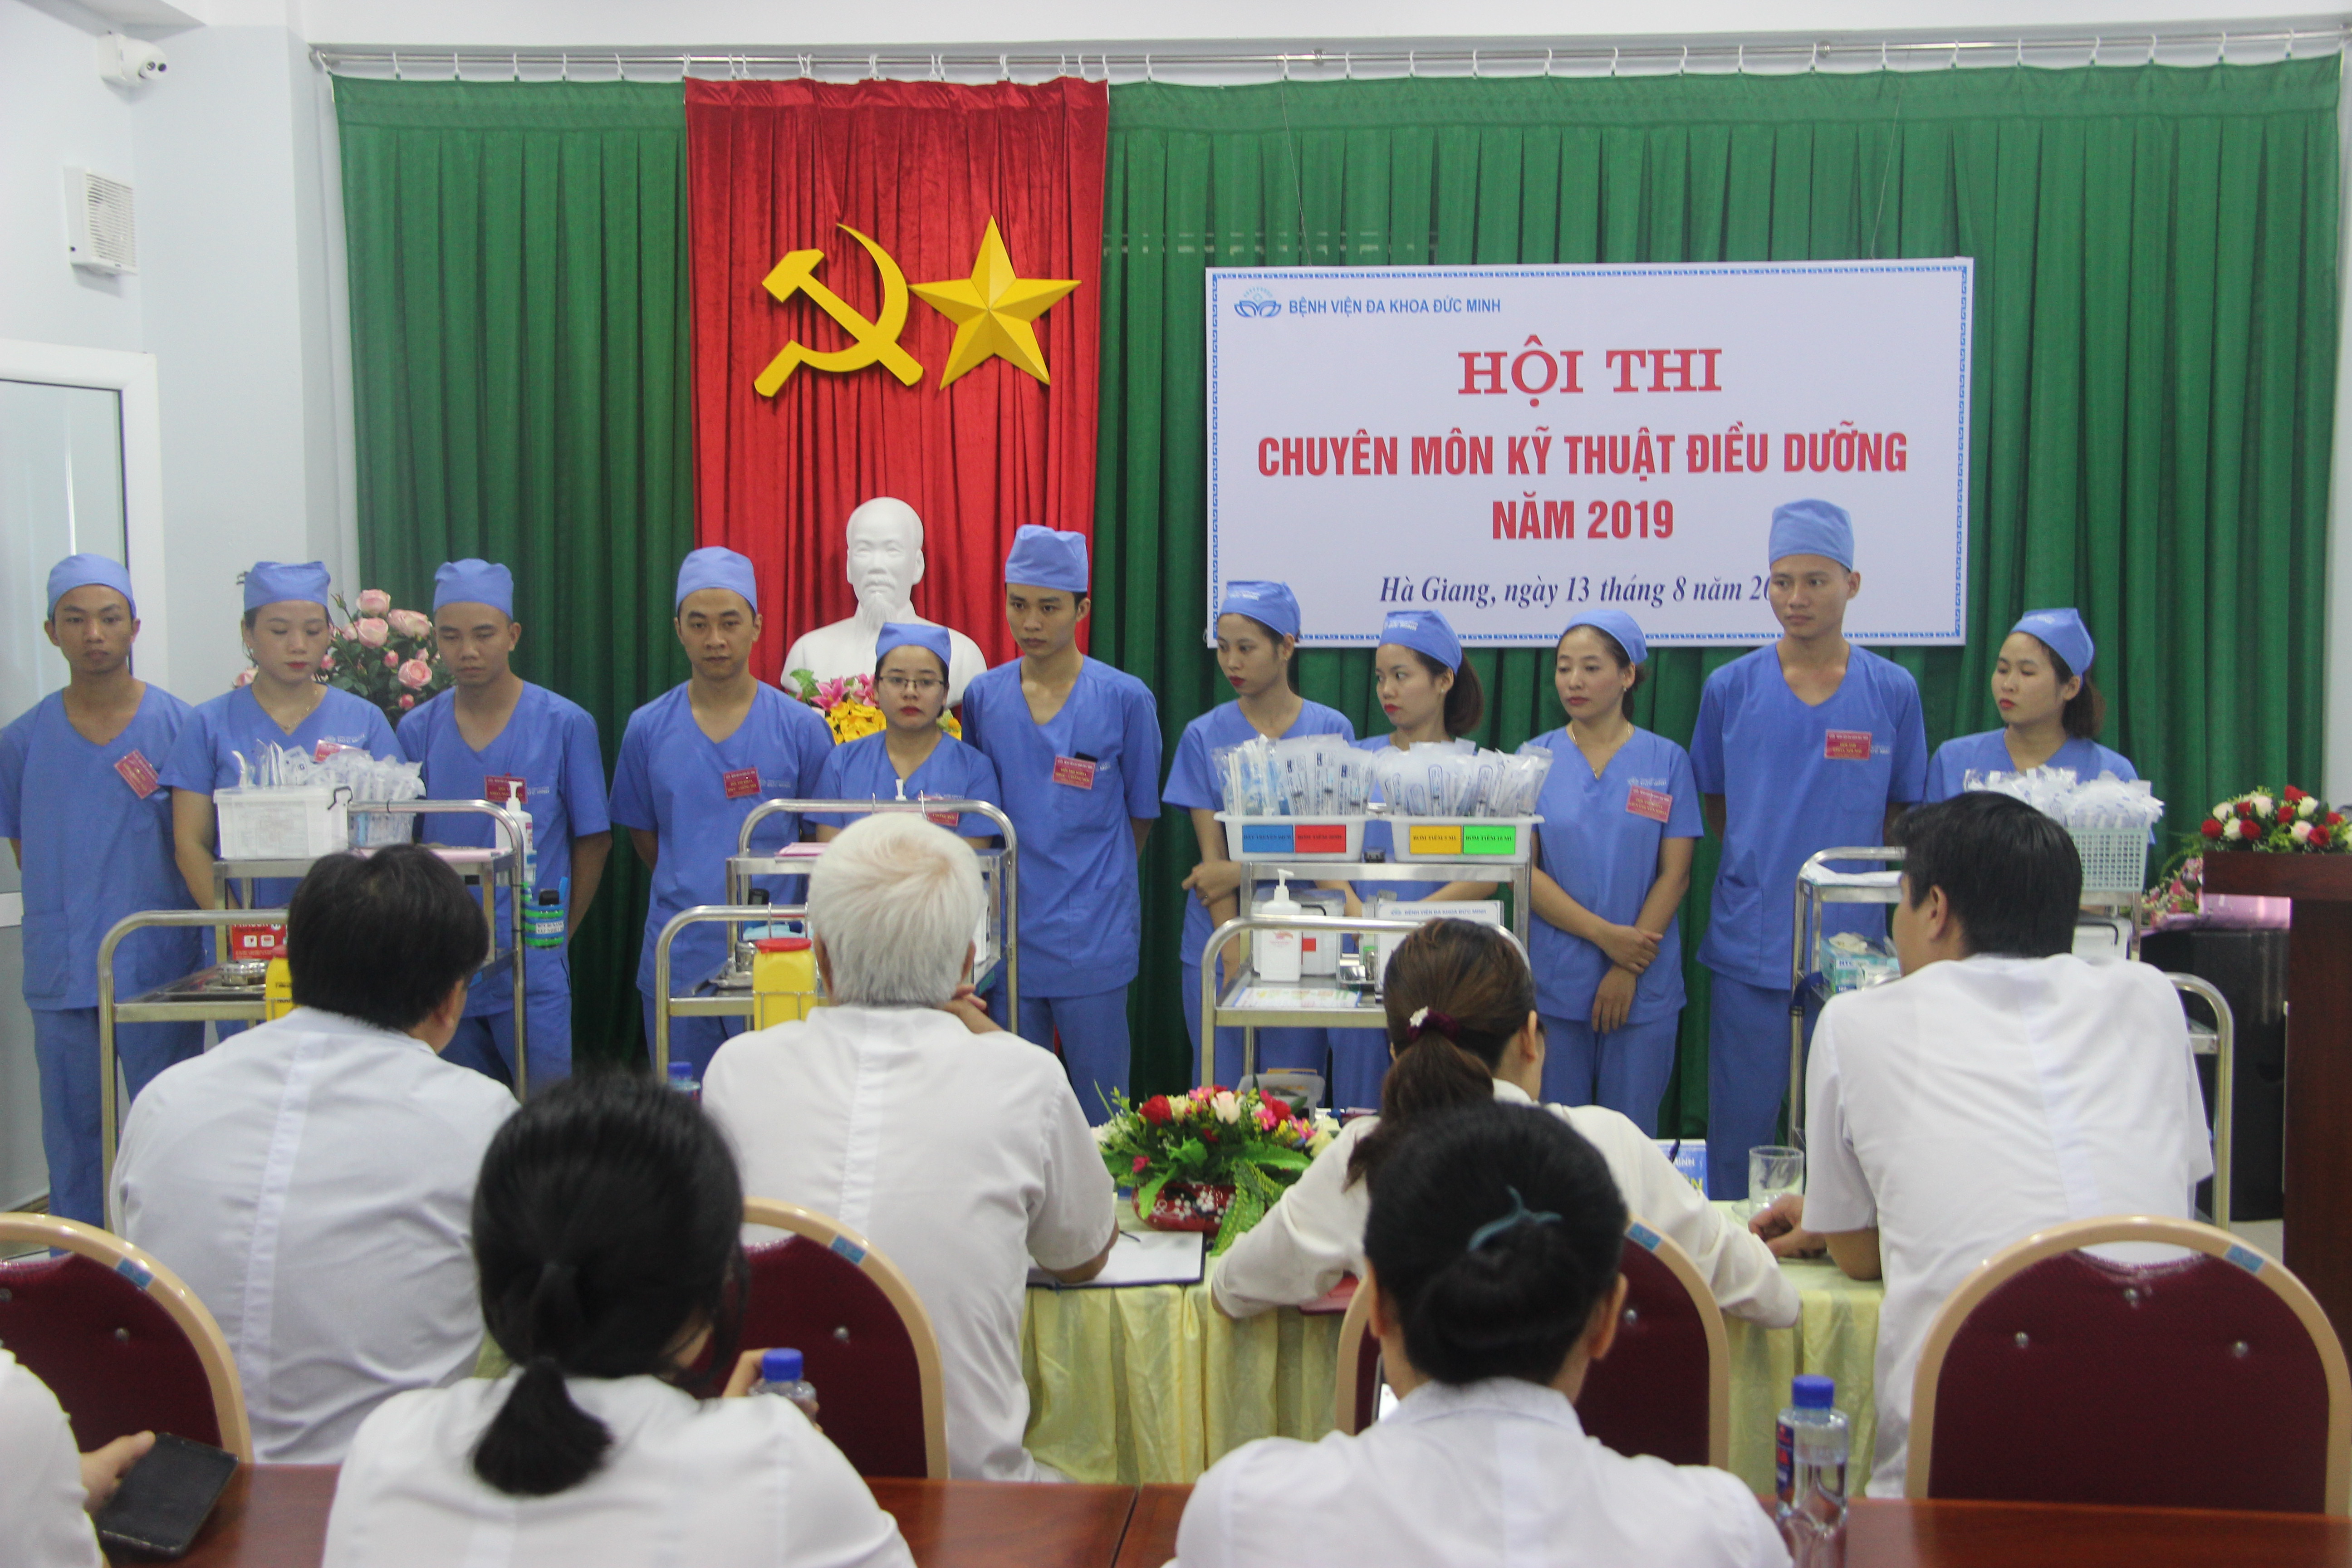 Bệnh viện đa khoa Đức Minh tổ chức Hội thi chuyên môn kỹ thuật Điều dưỡng